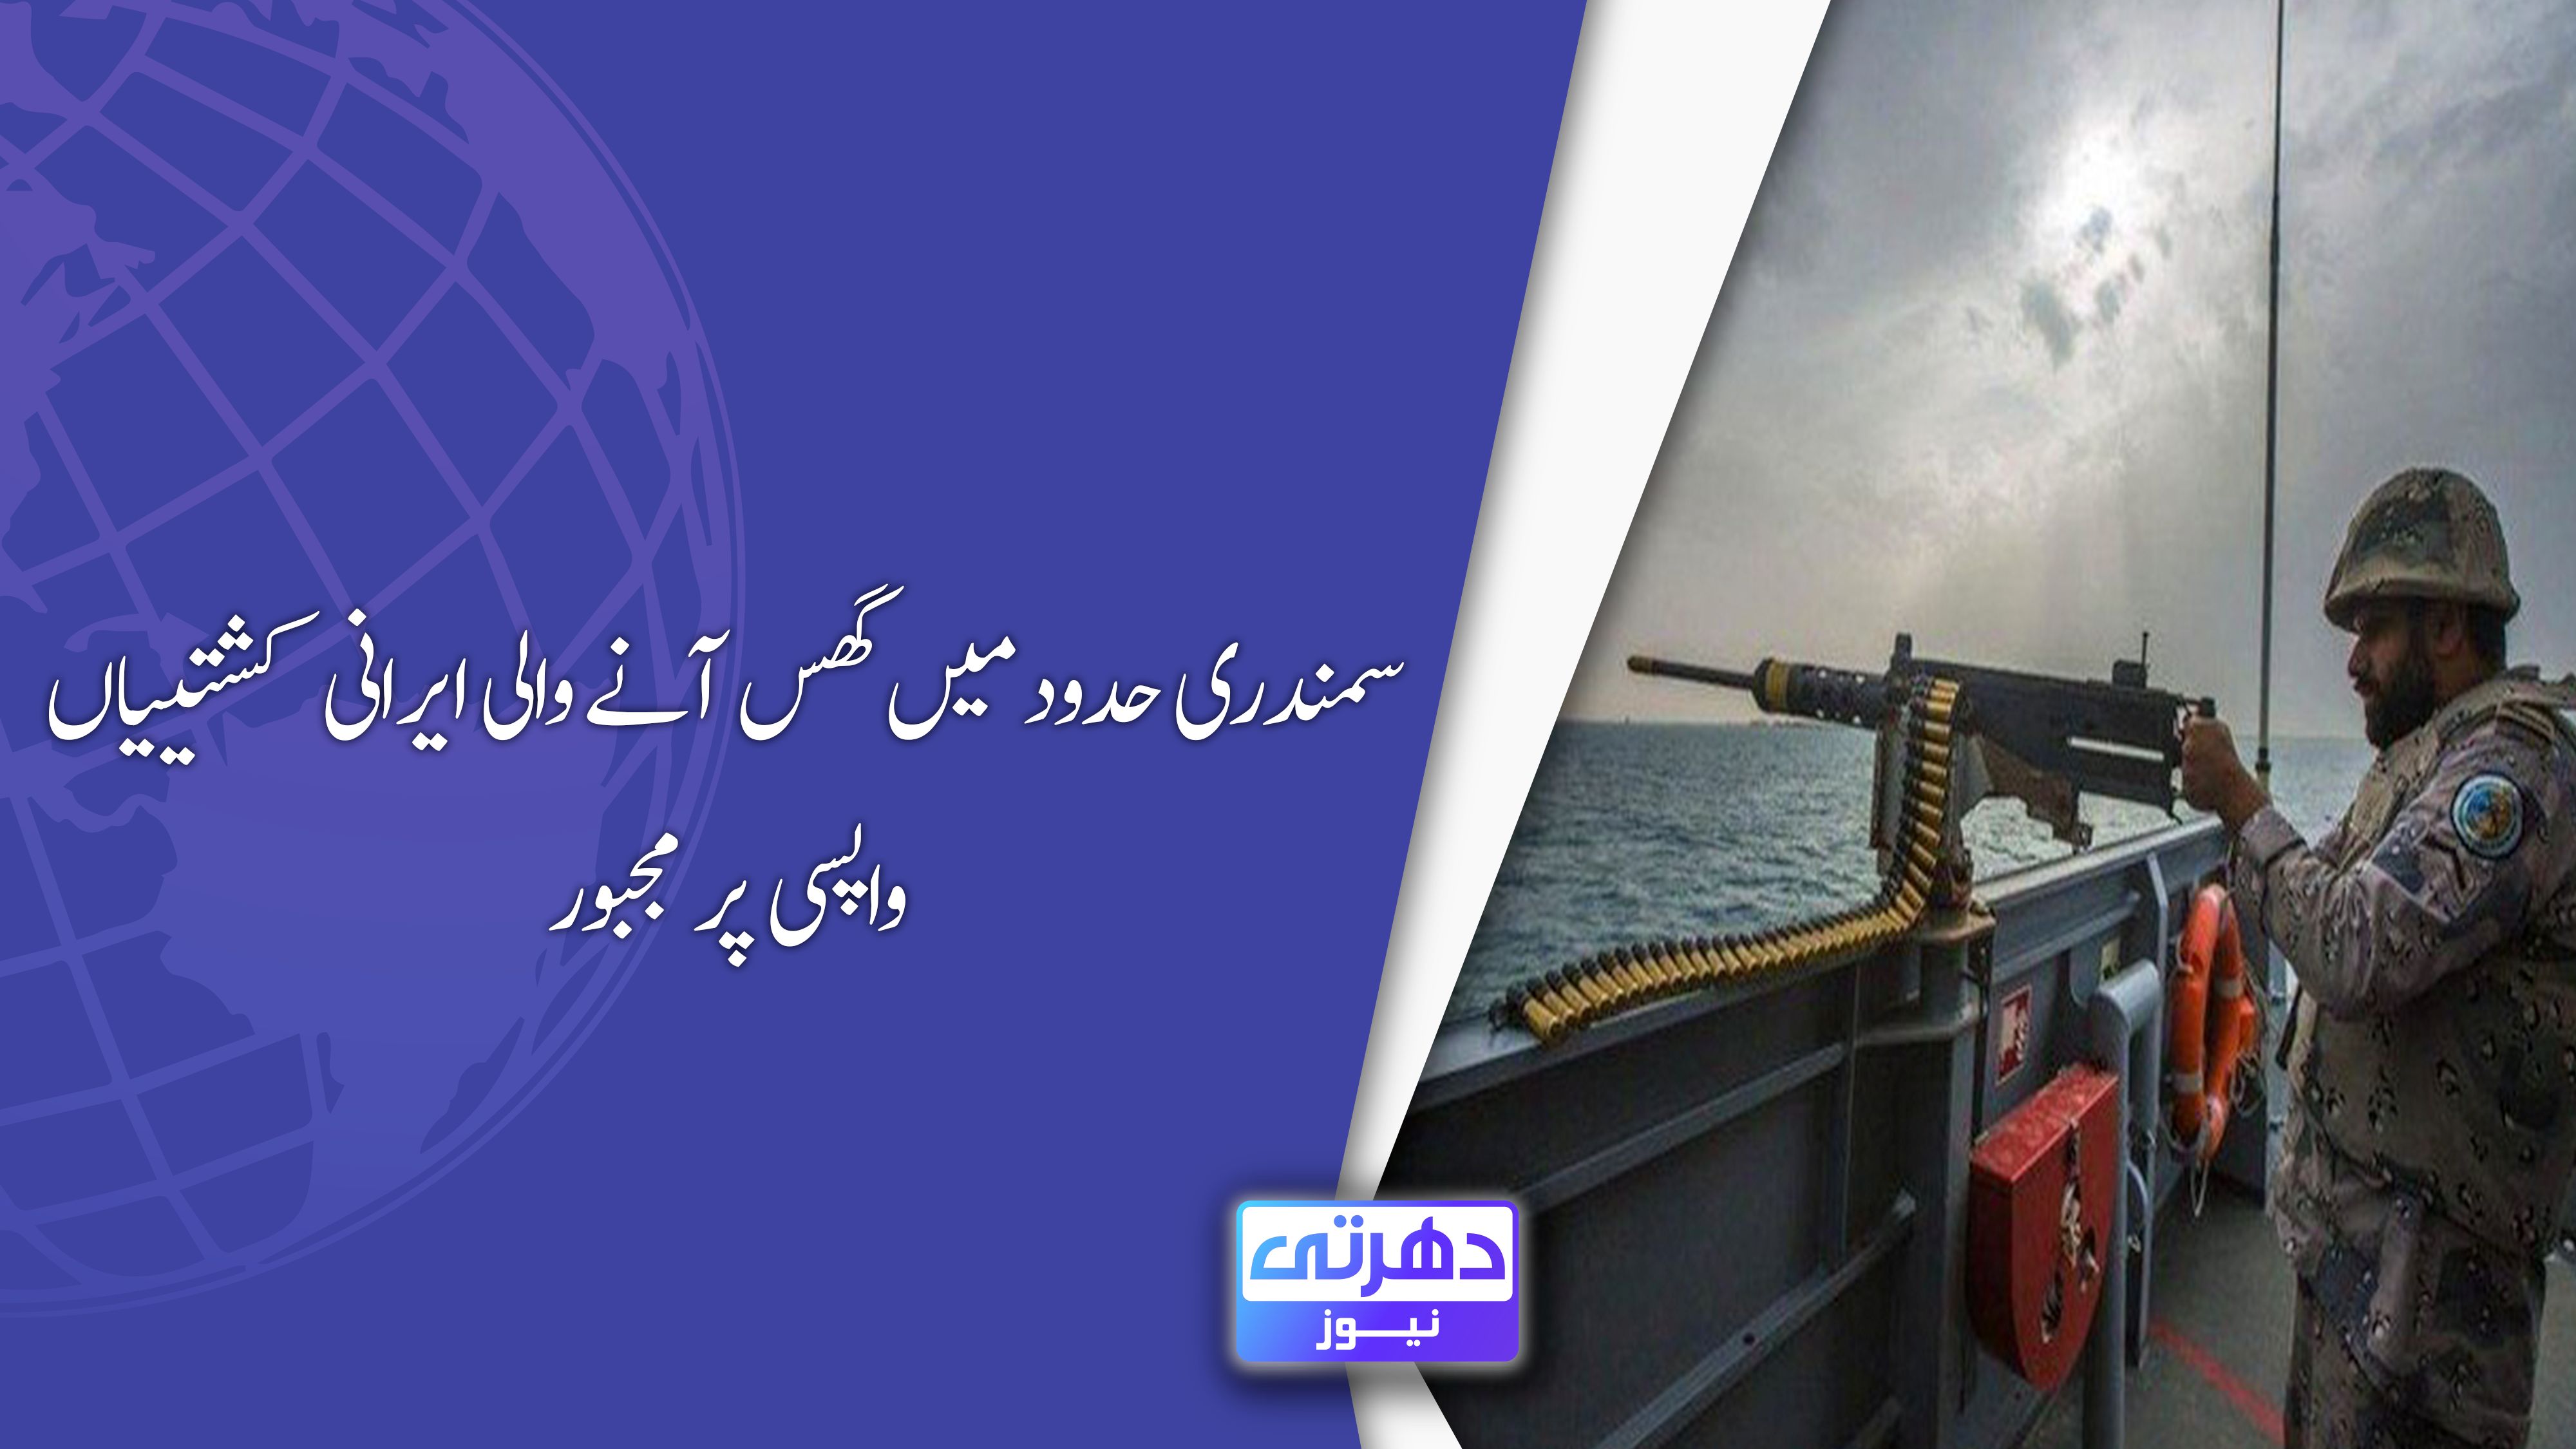 سمندری حدود میں گھس آنے والی ایرانی کشتییاں واپسی پر مجبور